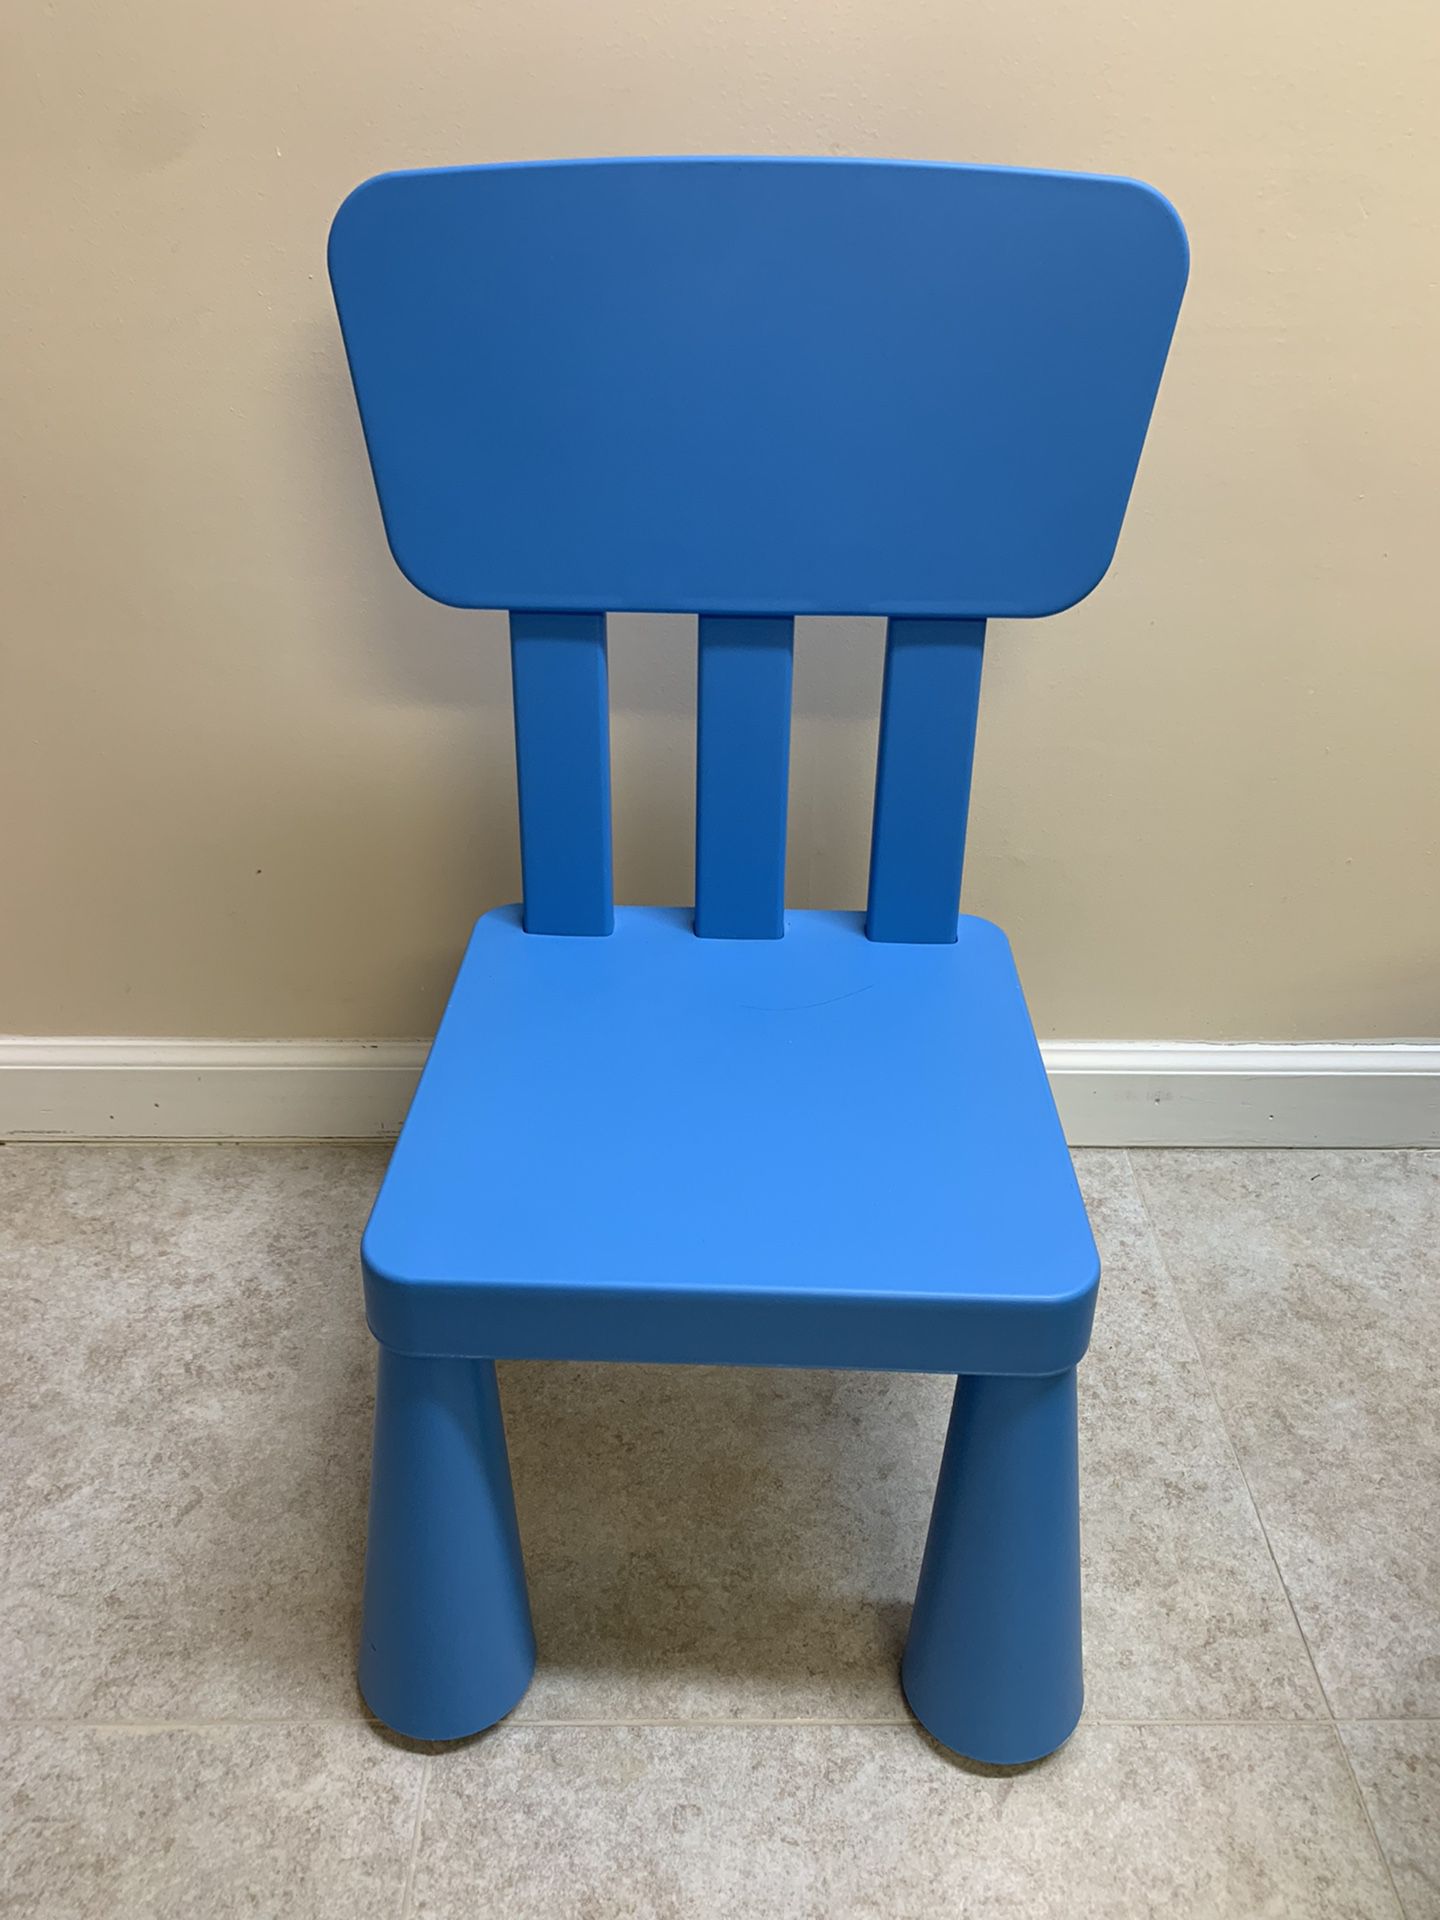 Three 3 - MAMMUT Children's Kid’s Indoor/Outdoor Chair - Blue